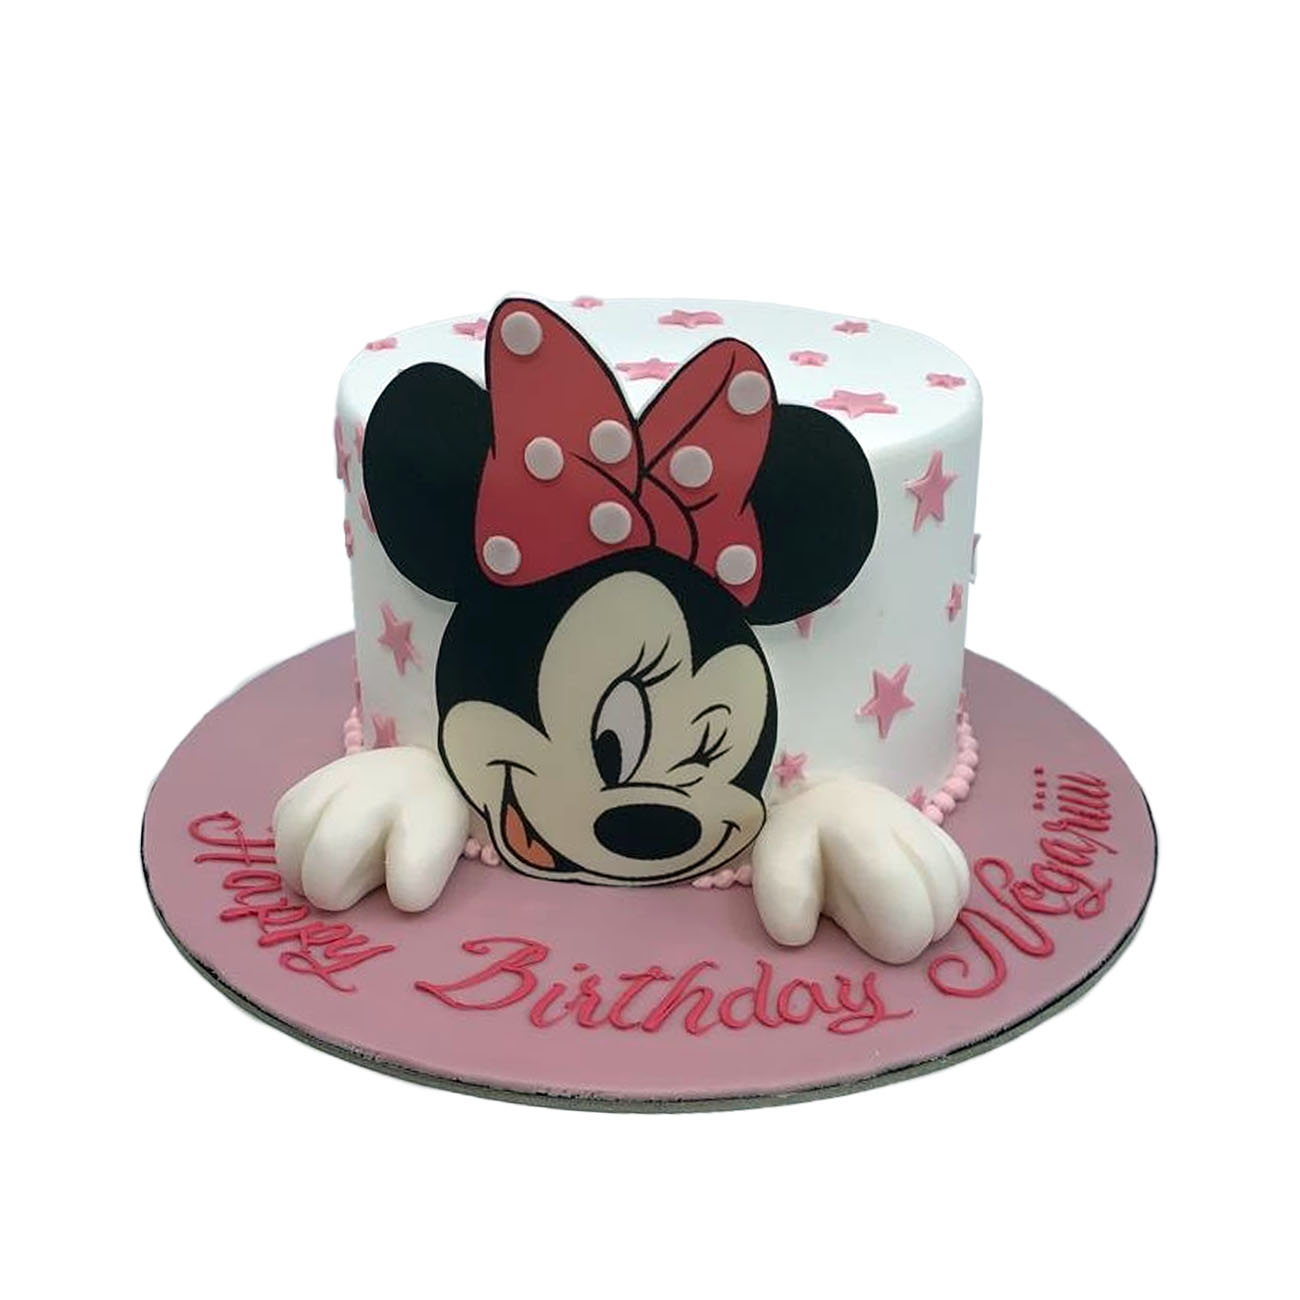 Mickey mouse 3D cake 4k.g red velvet